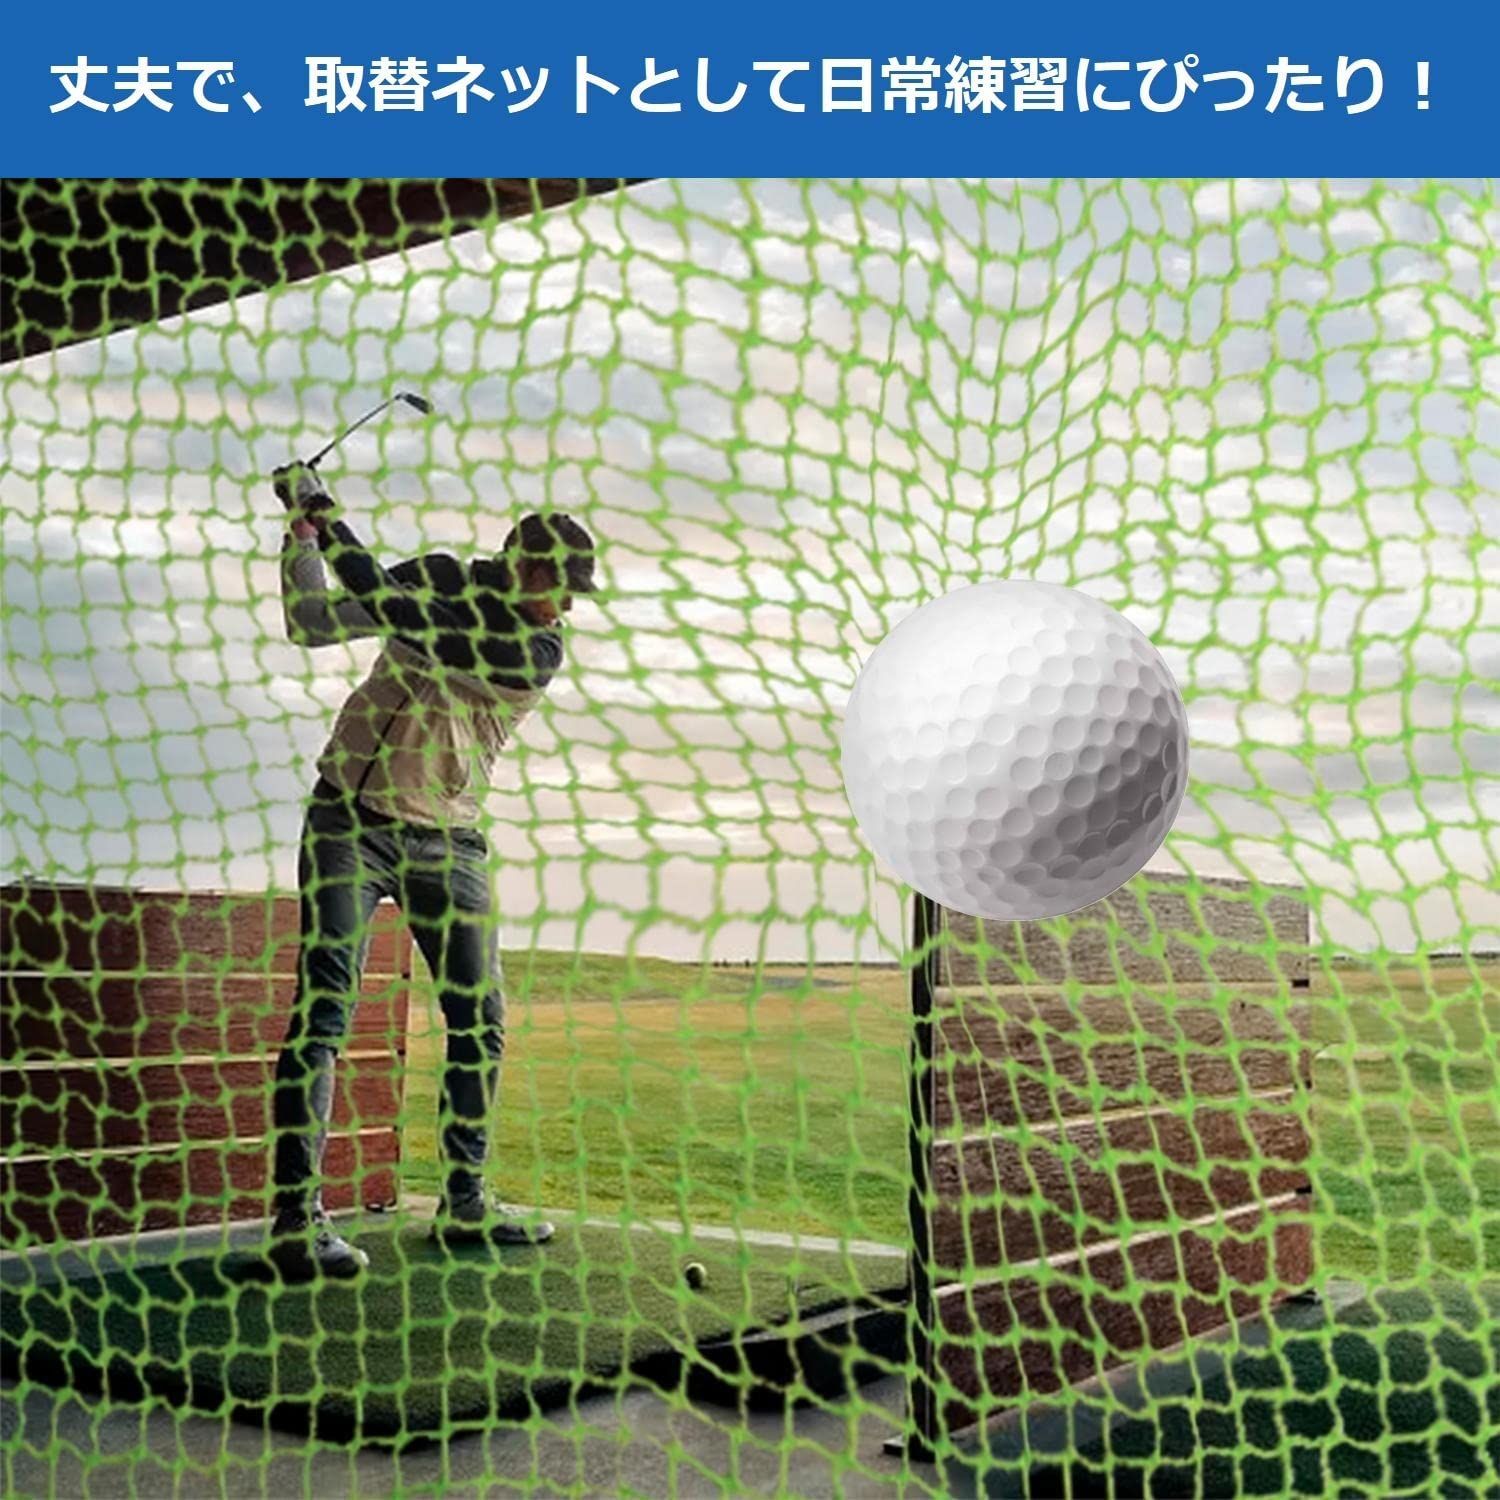 ☆人気商品☆】ゴルフネット ネットピース ネット 網 練習用 取替用